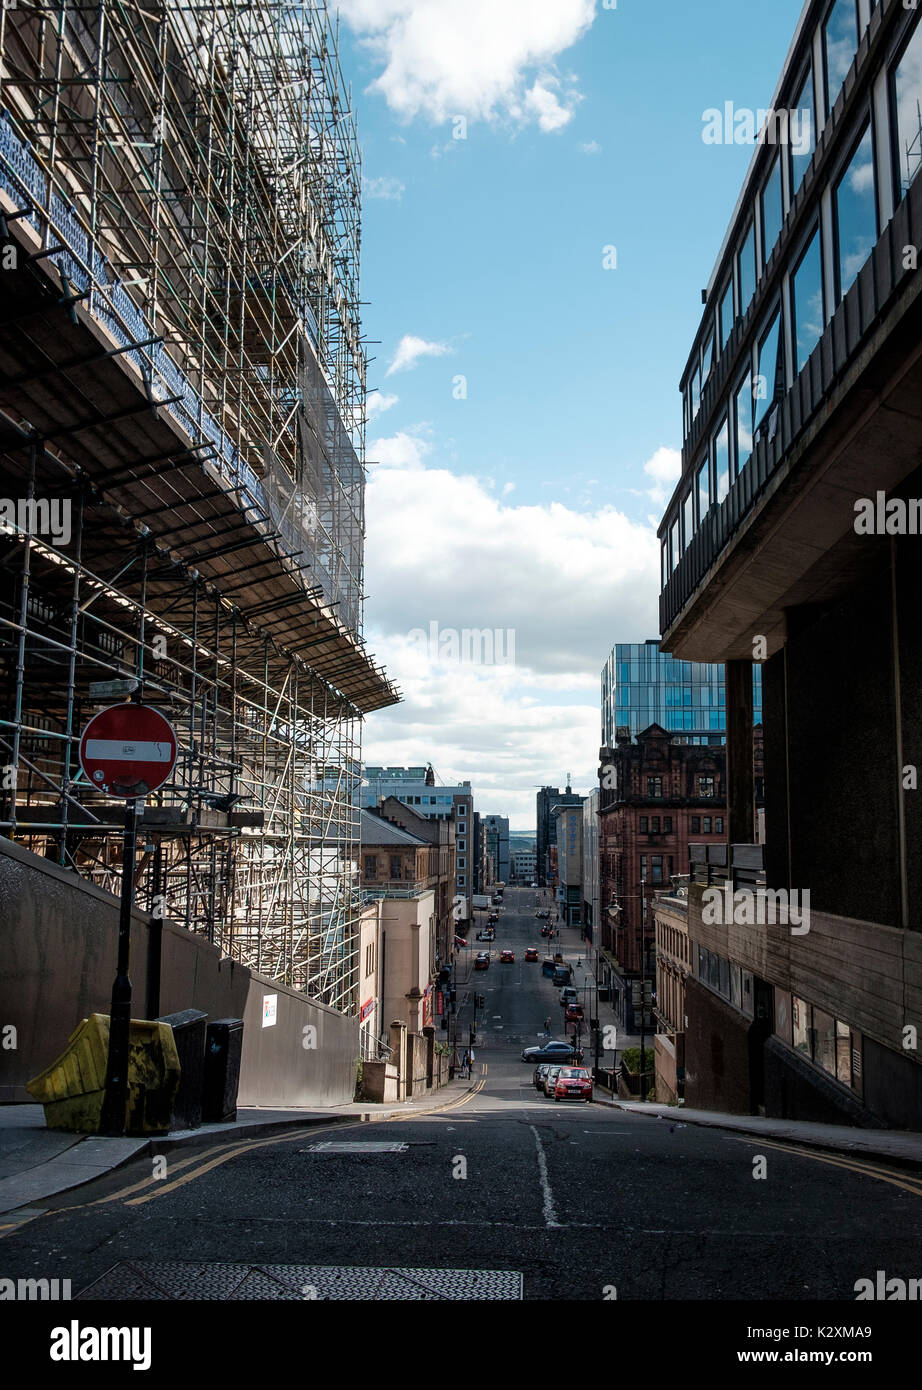 August 2017 - Die Bauarbeiten weiterhin an der Glasgow School of Art Charles Rennie Mackintosh Gebäude nach dem verheerenden Brand im Jahr 2014 Stockfoto